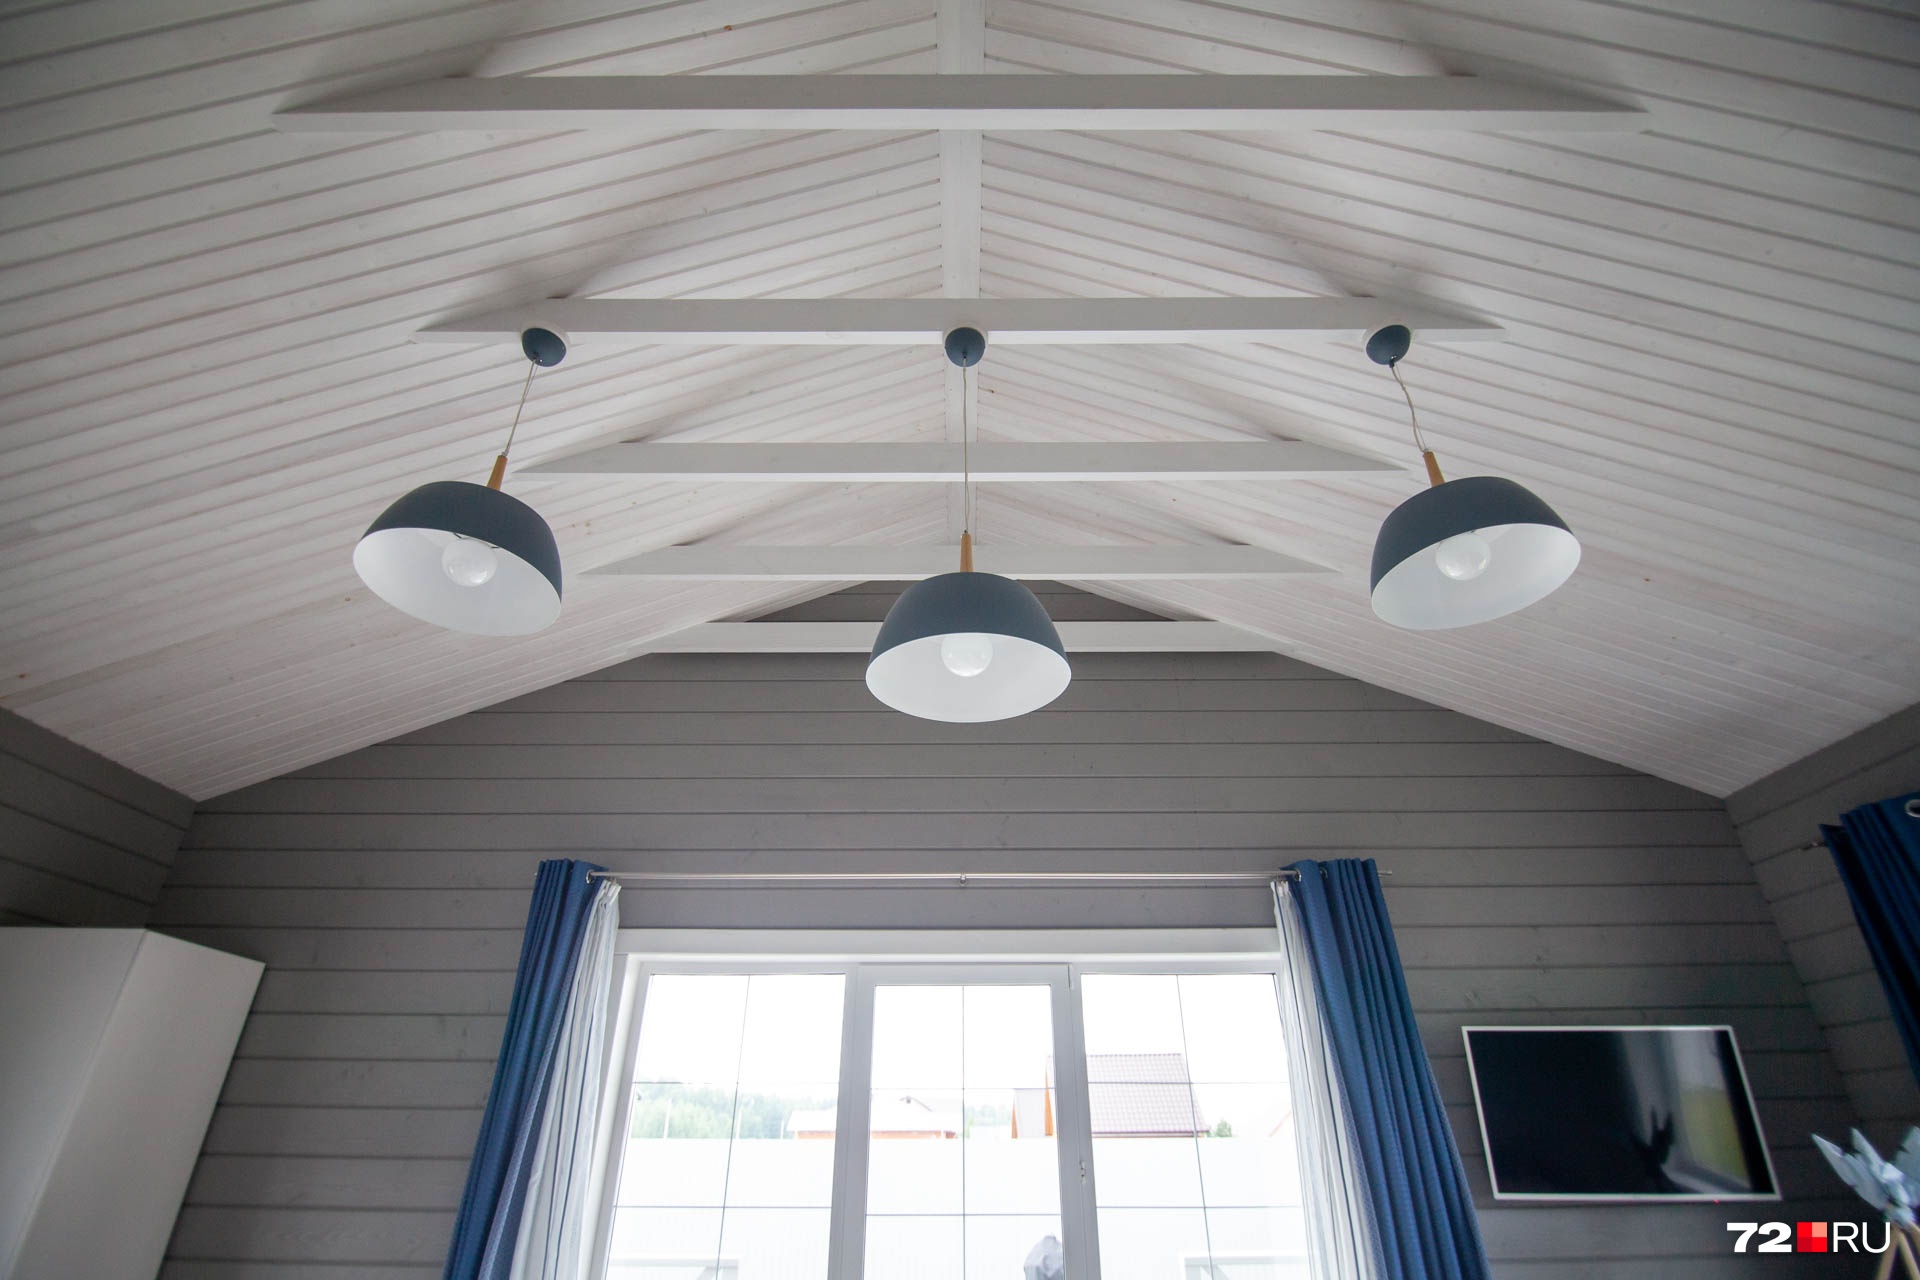 Необычный потолок и система освещения — настоящая гордость хозяев дома. Выглядит эффектно, согласны?